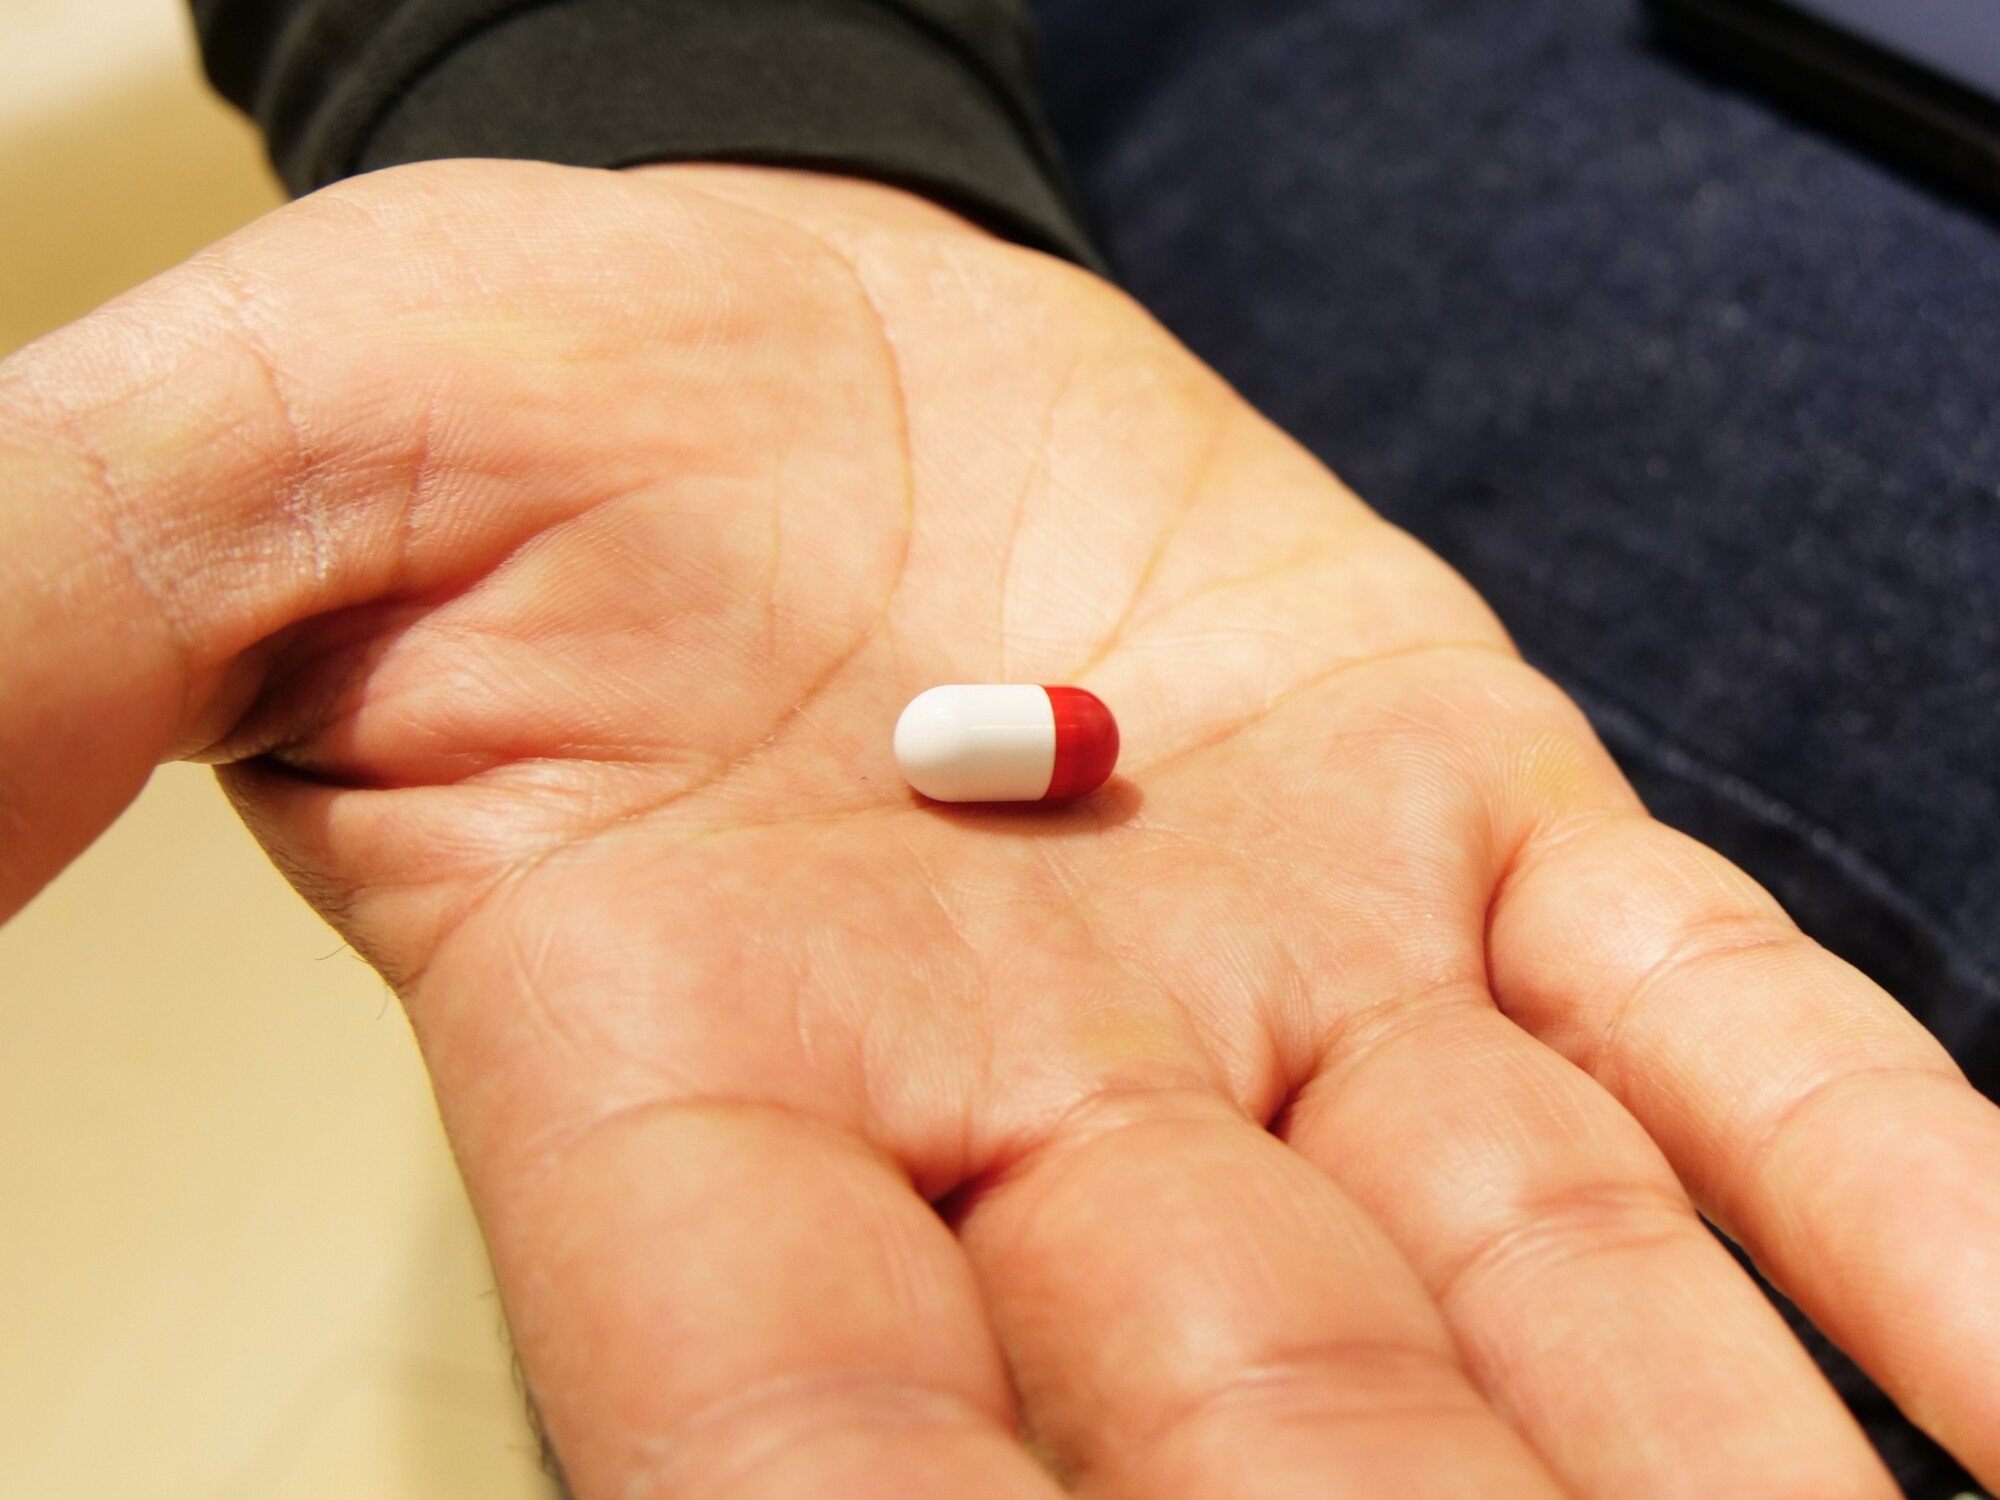 Vivatech : cette drôle de pilule connectée veut optimiser les performances des sportifs, mais comment ?